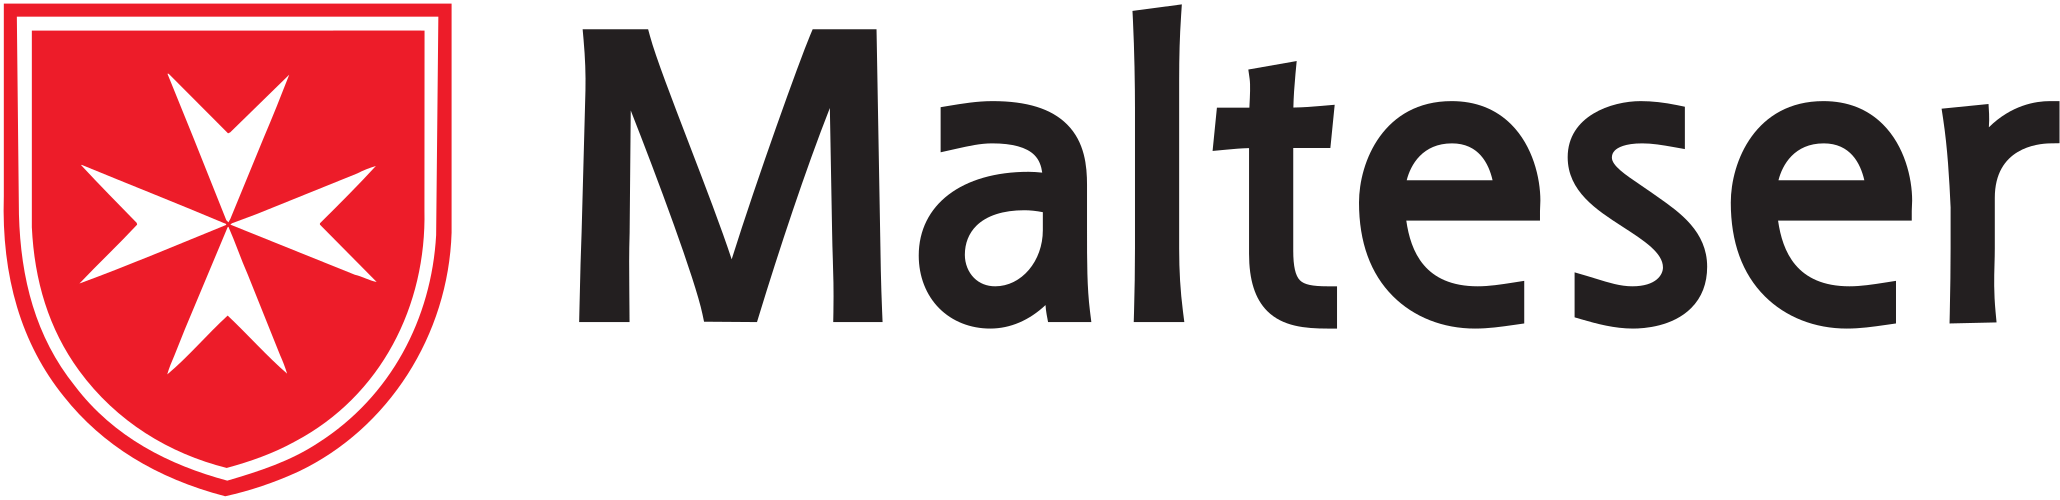 Malteser_Logo.svg